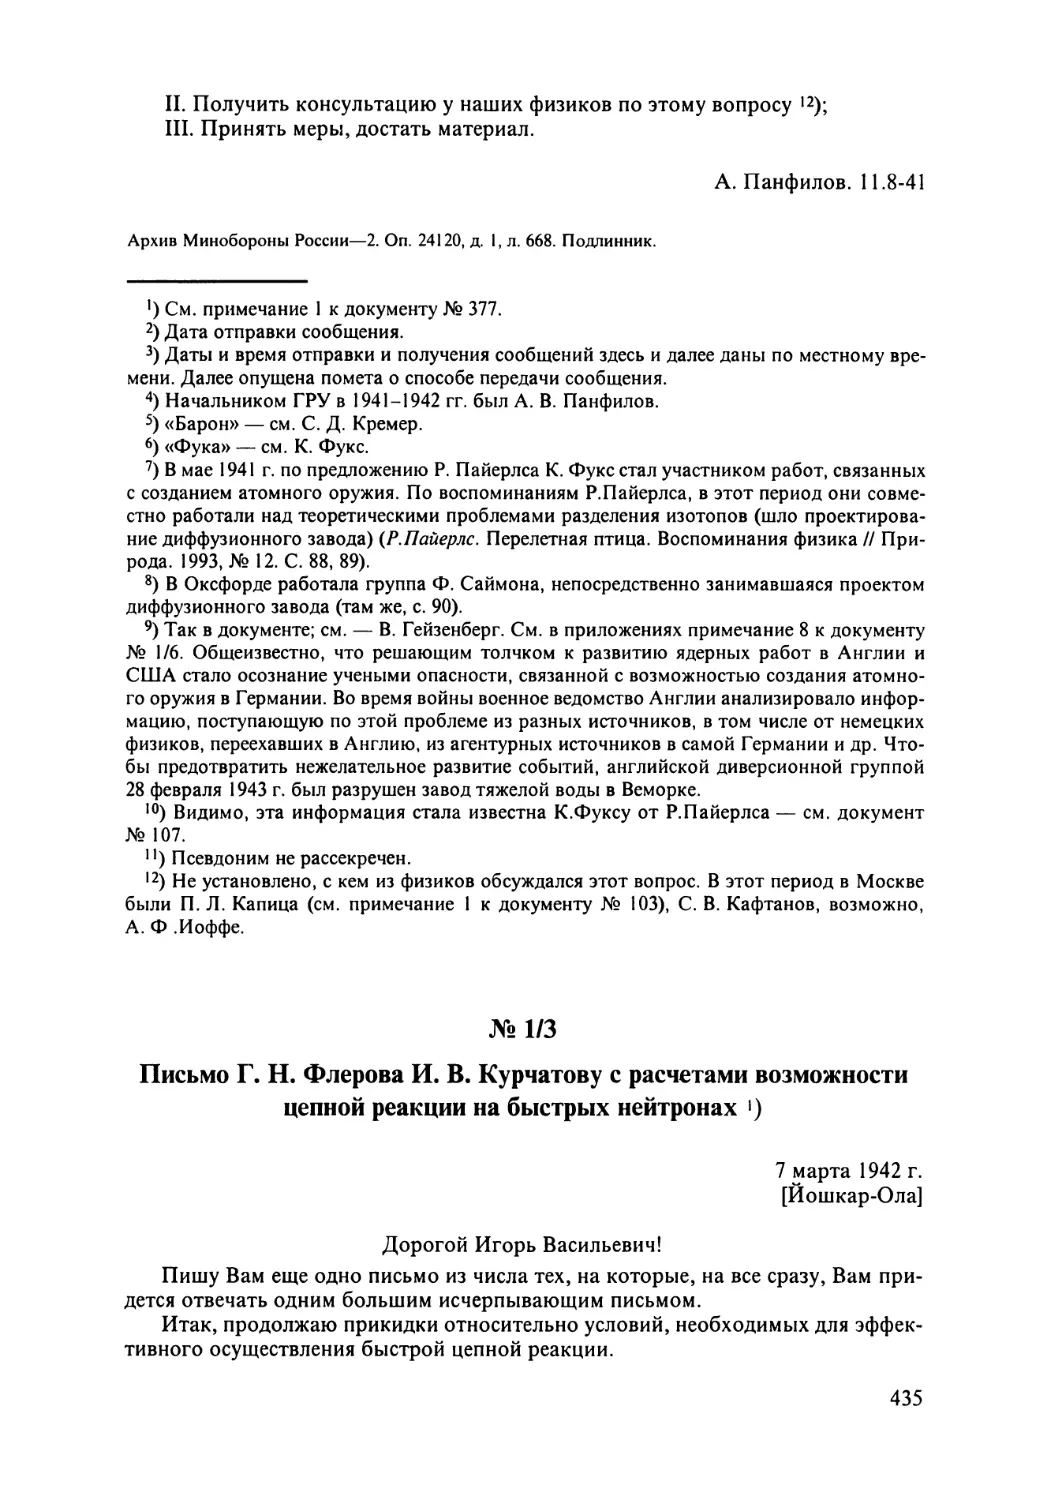 № 1/3. Письмо Г.Н.Флерова И.В.Курчатову с расчетами возможности цепной реакции на быстрых нейтронах. 7 марта 1942 г.